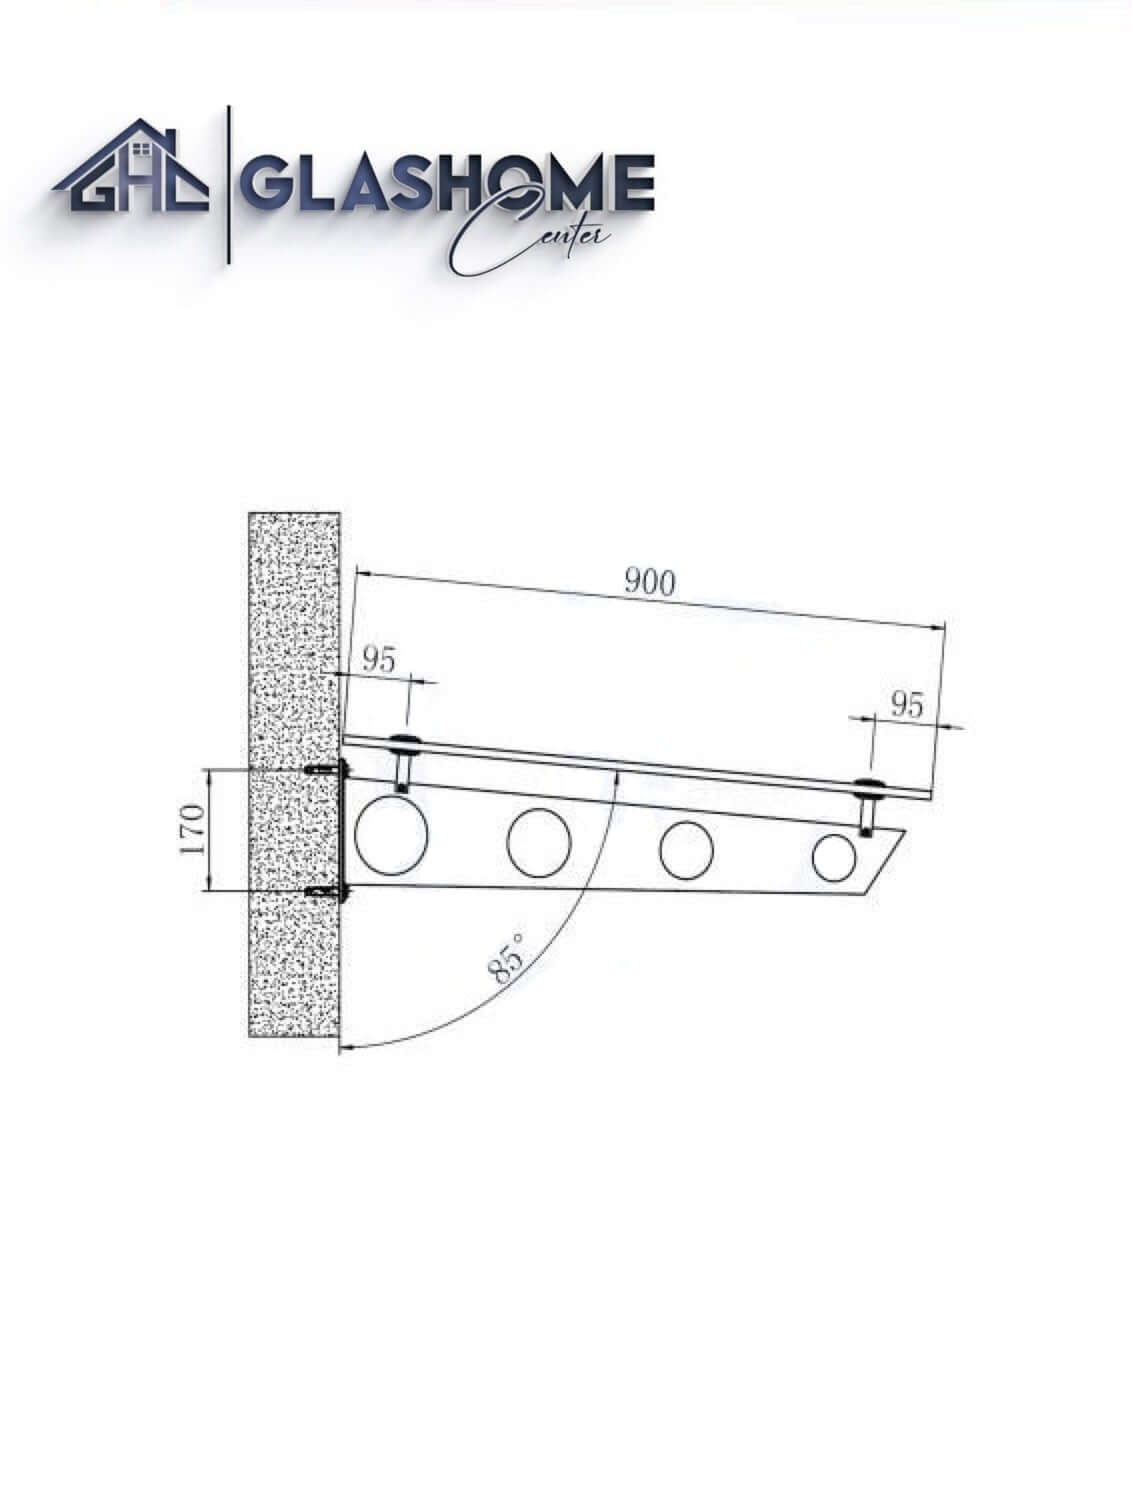 GlasHomeCenter - Glasvordach - Milchglas - 180x90cm - 13.1mm VSG - inkl. 2 schwarze Edelstahlhalterungen Variante "Stockholm"